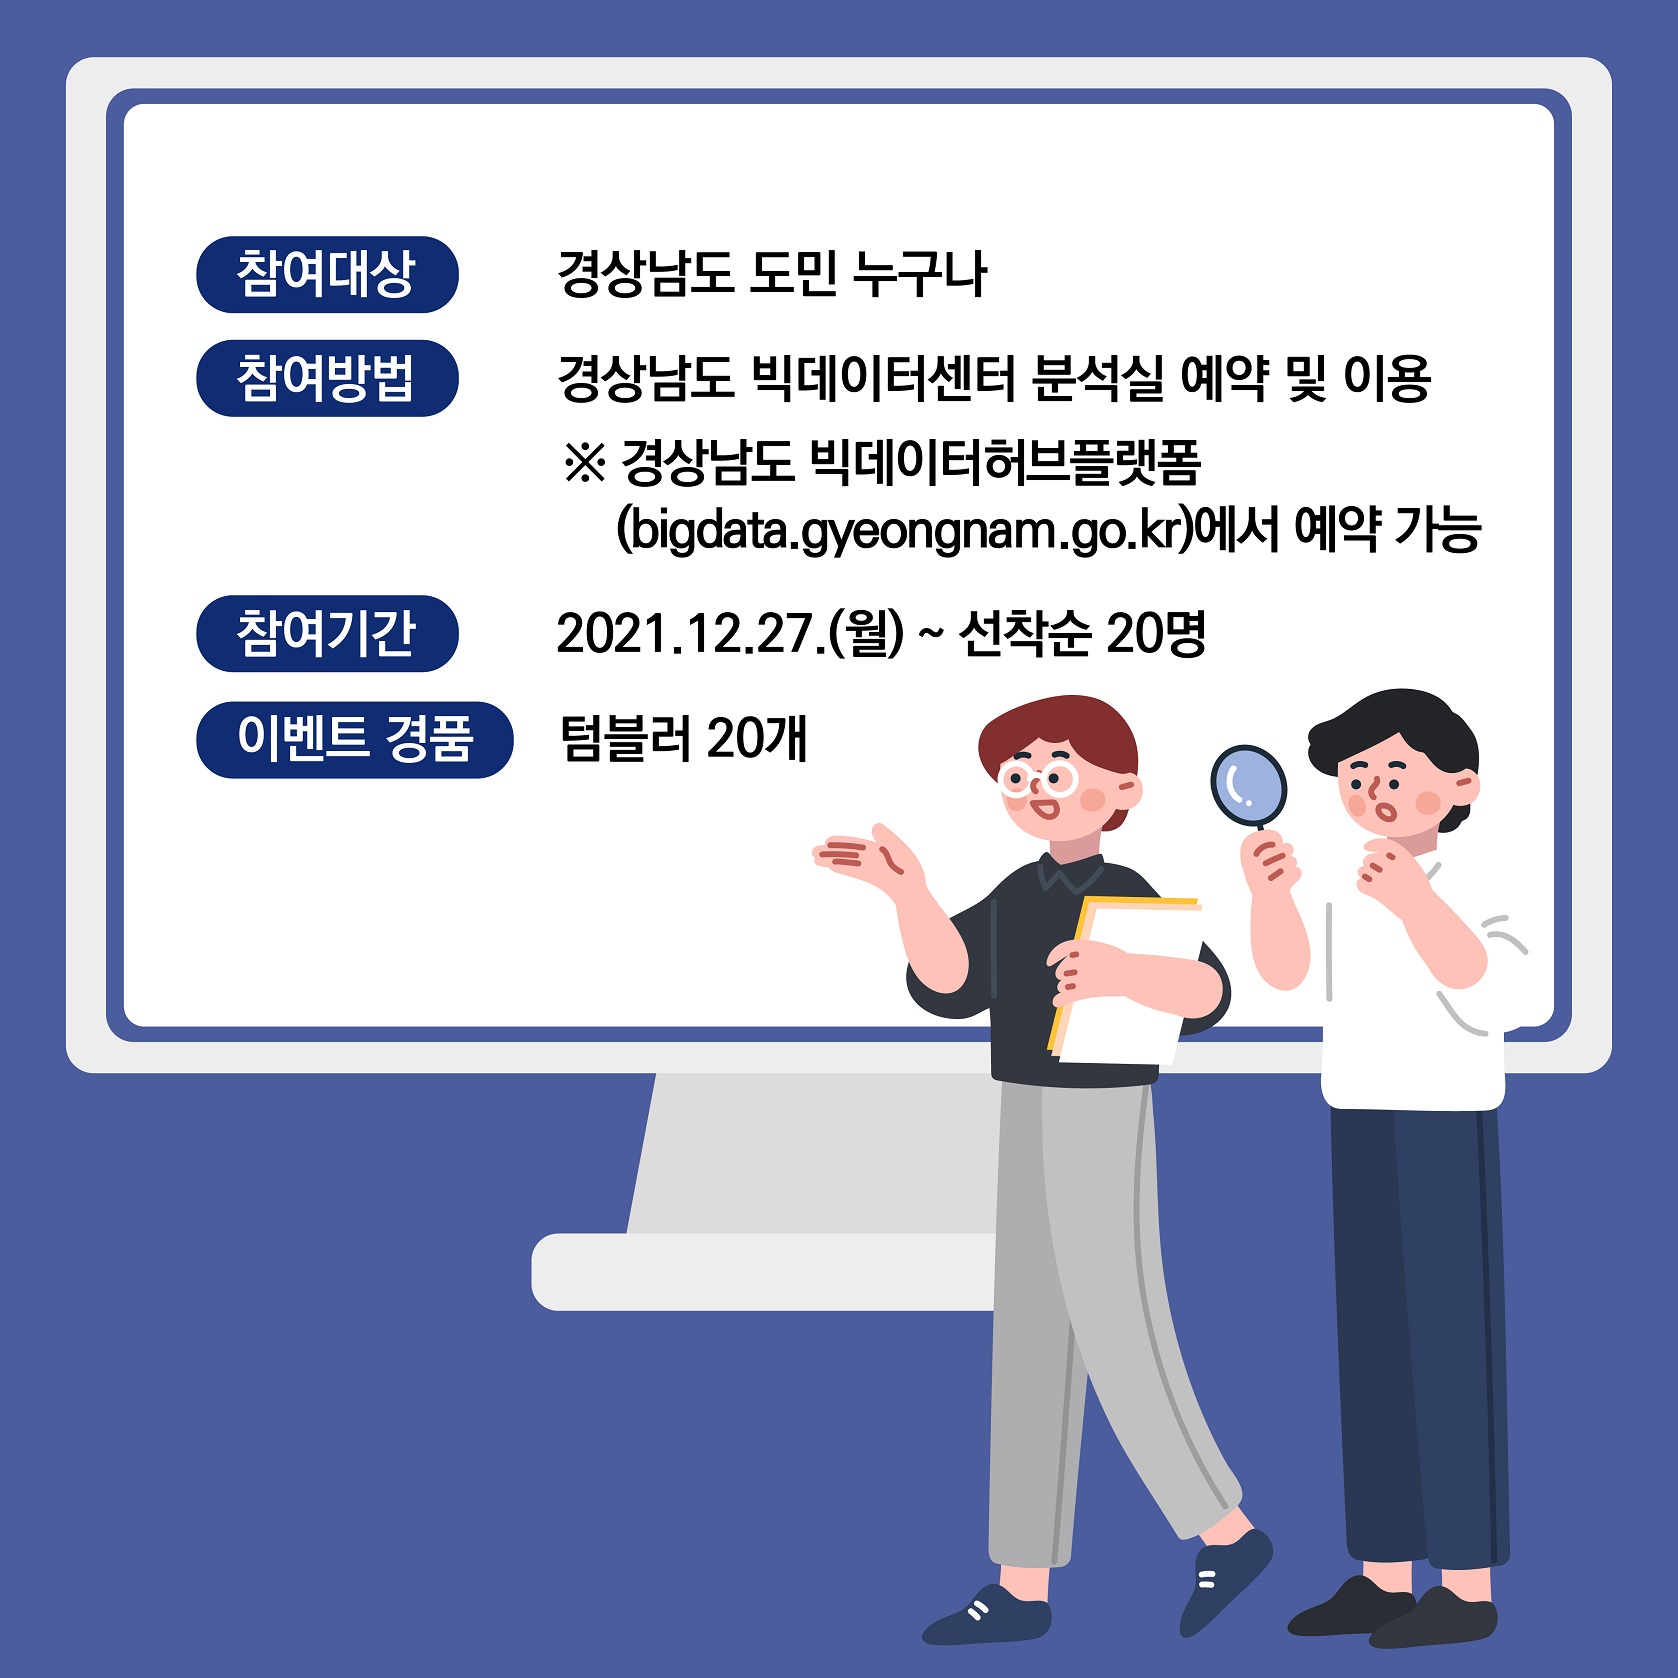 신년맞이 「경상남도 빅데이터센터」 이벤트 실시 4